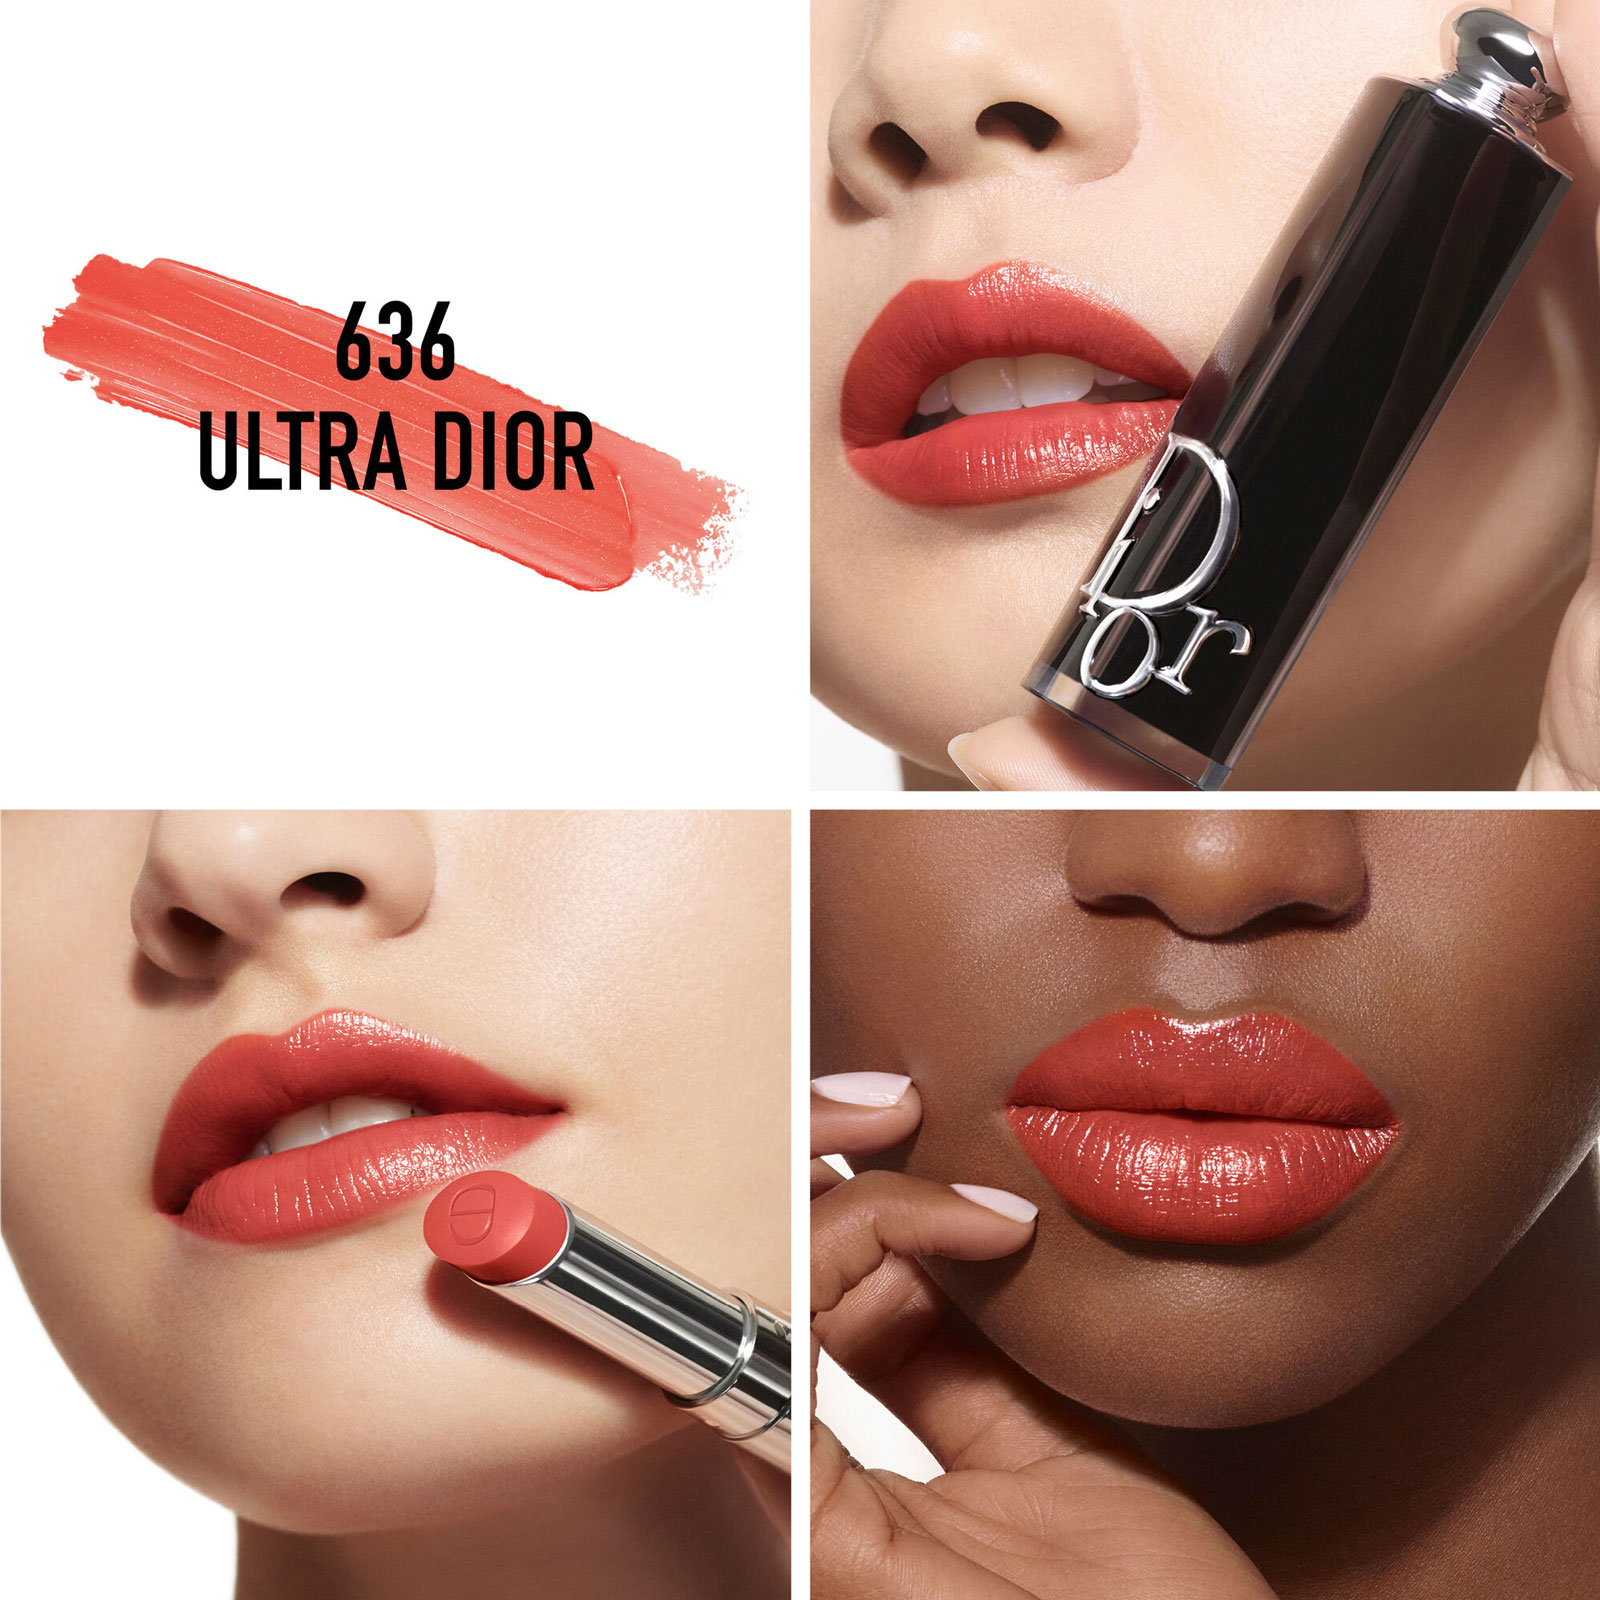 Dior Addict Shine Lipstick Refill 3.2G 636 Ultra Dior